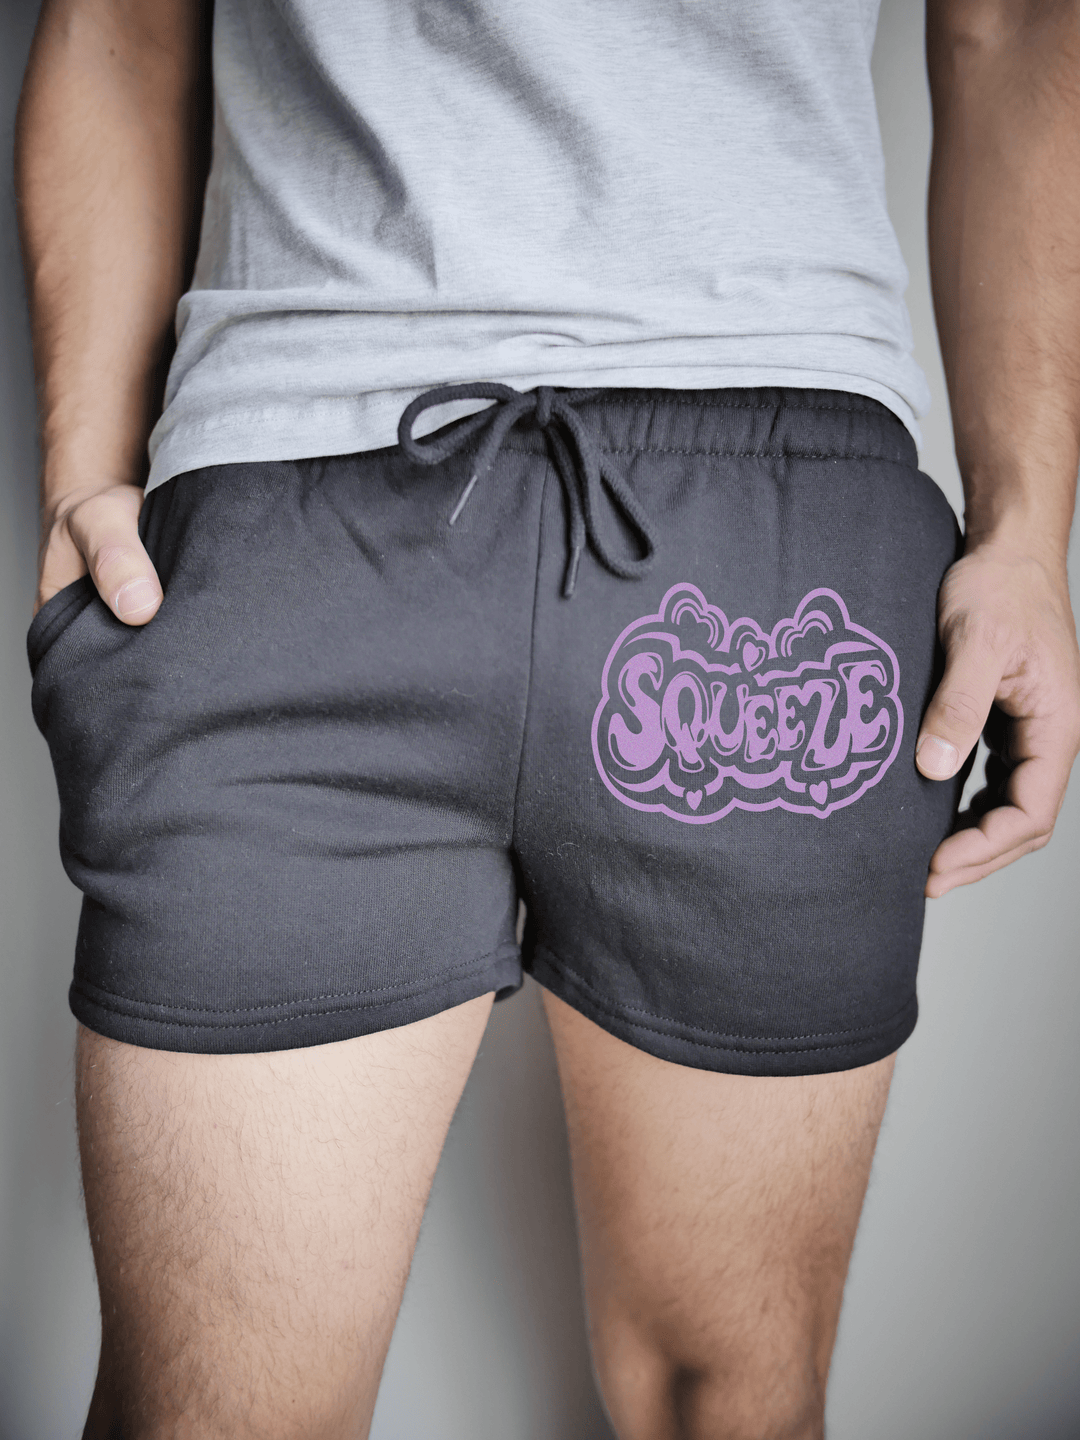 PixelThat Punderwear Shorts Black / S / Front Squeeze Men's Gym Shorts